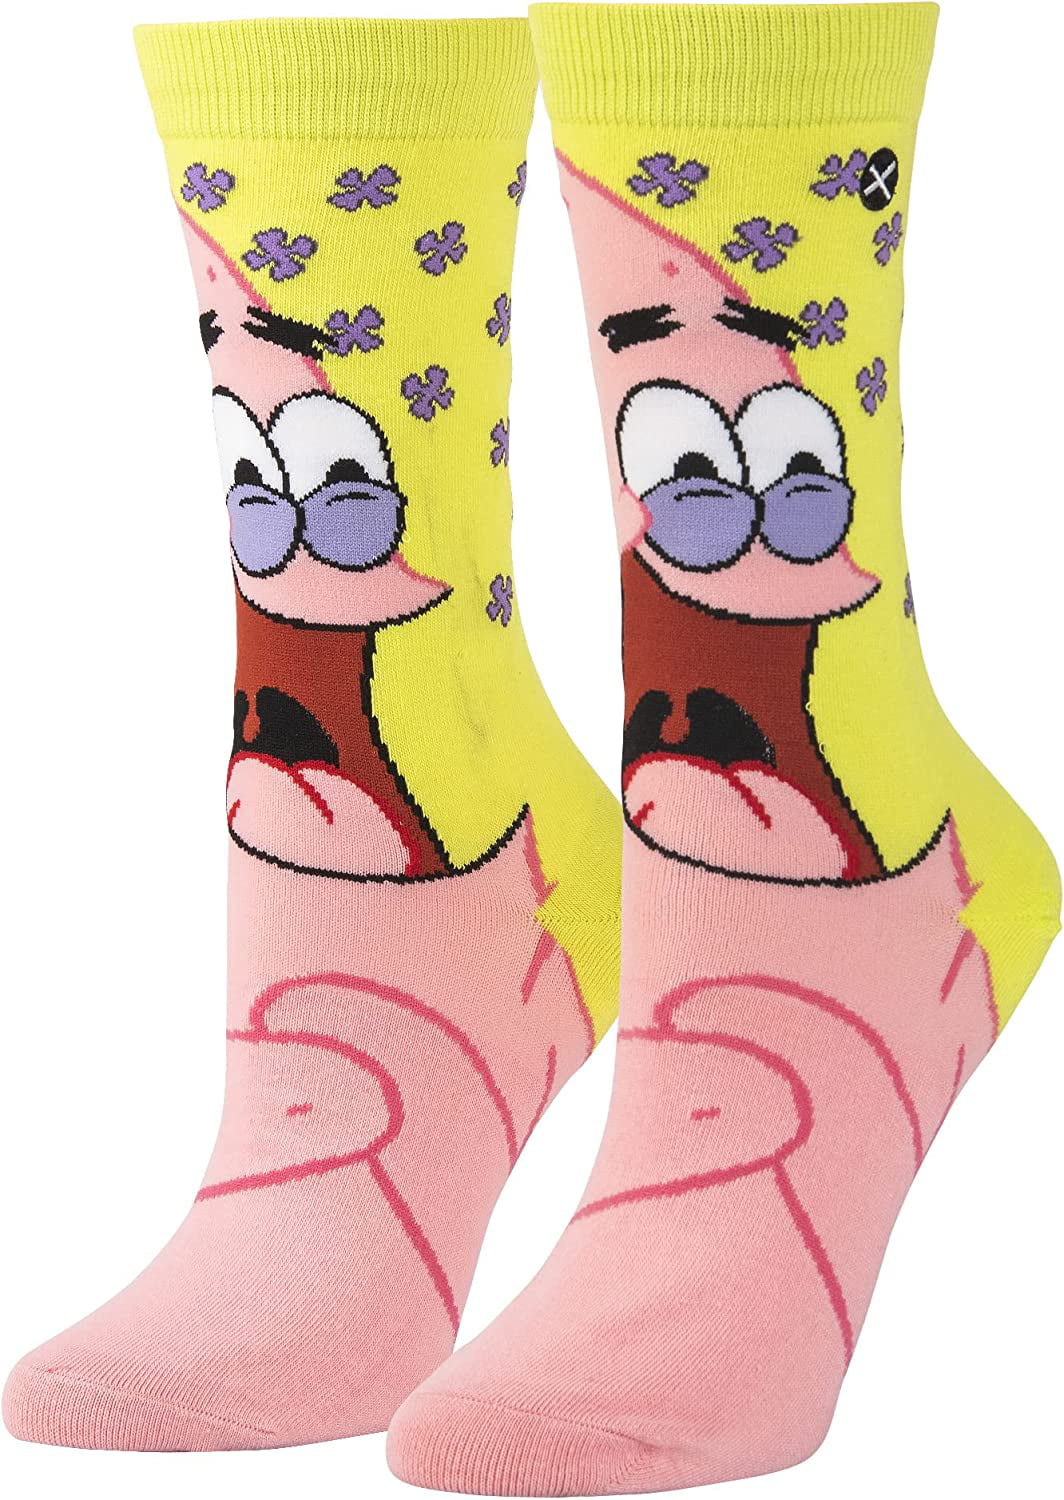 Odd Sox, Nick Stickers Women's Cartoon Socks